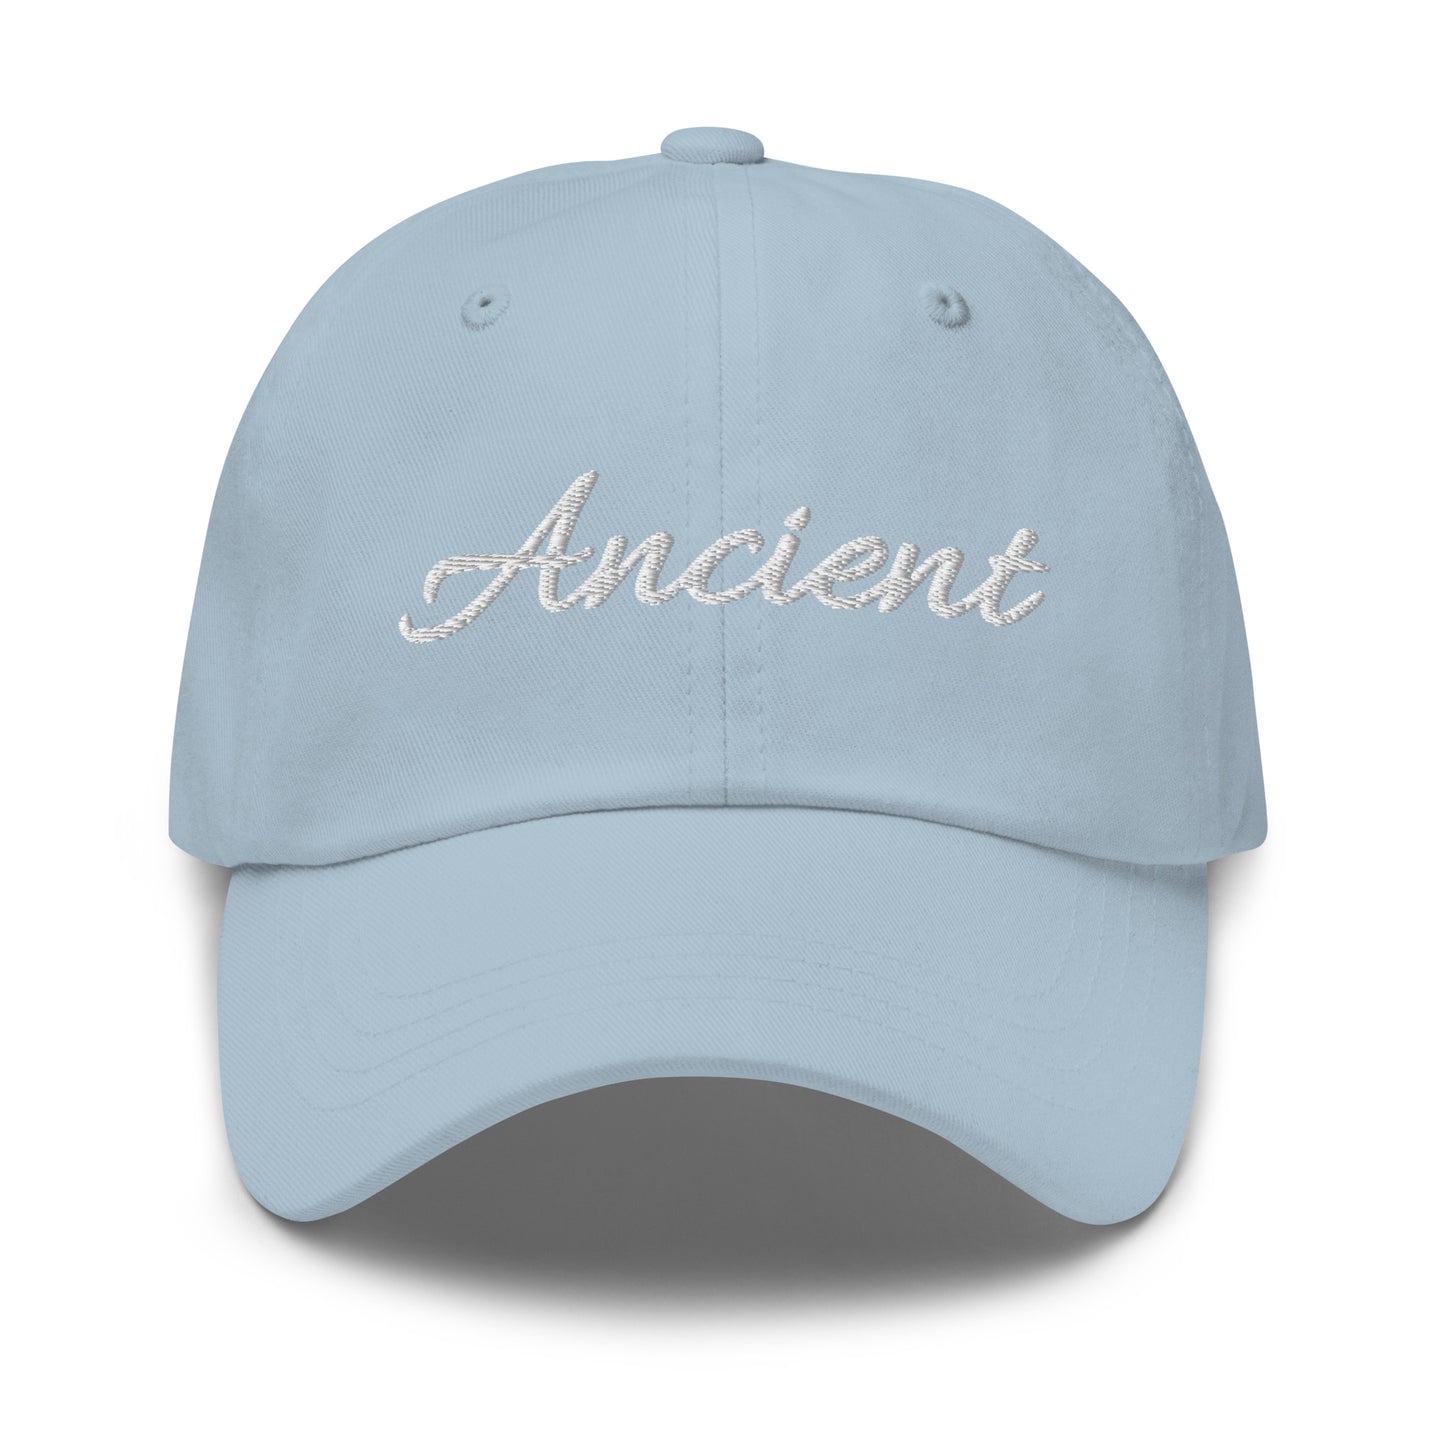 Ancient Hat / Word Ancient Hat / Ancient Dad hat